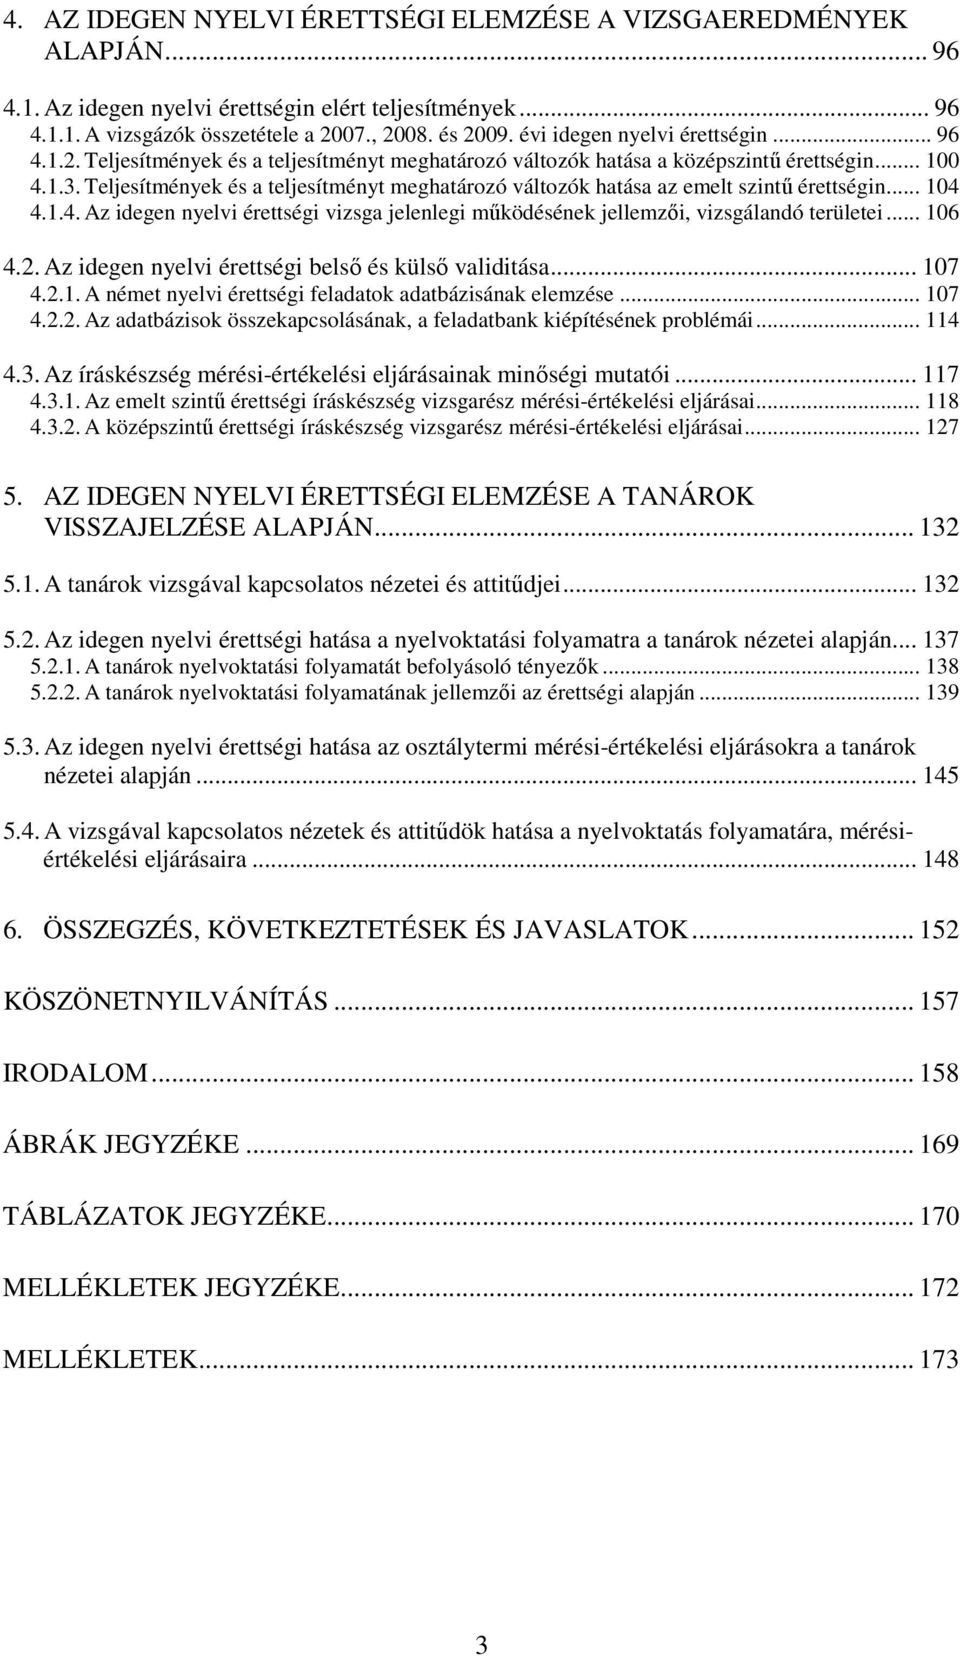 Teljesítmények és a teljesítményt meghatározó változók hatása az emelt szintő érettségin... 104 4.1.4. Az idegen nyelvi érettségi vizsga jelenlegi mőködésének jellemzıi, vizsgálandó területei... 106 4.